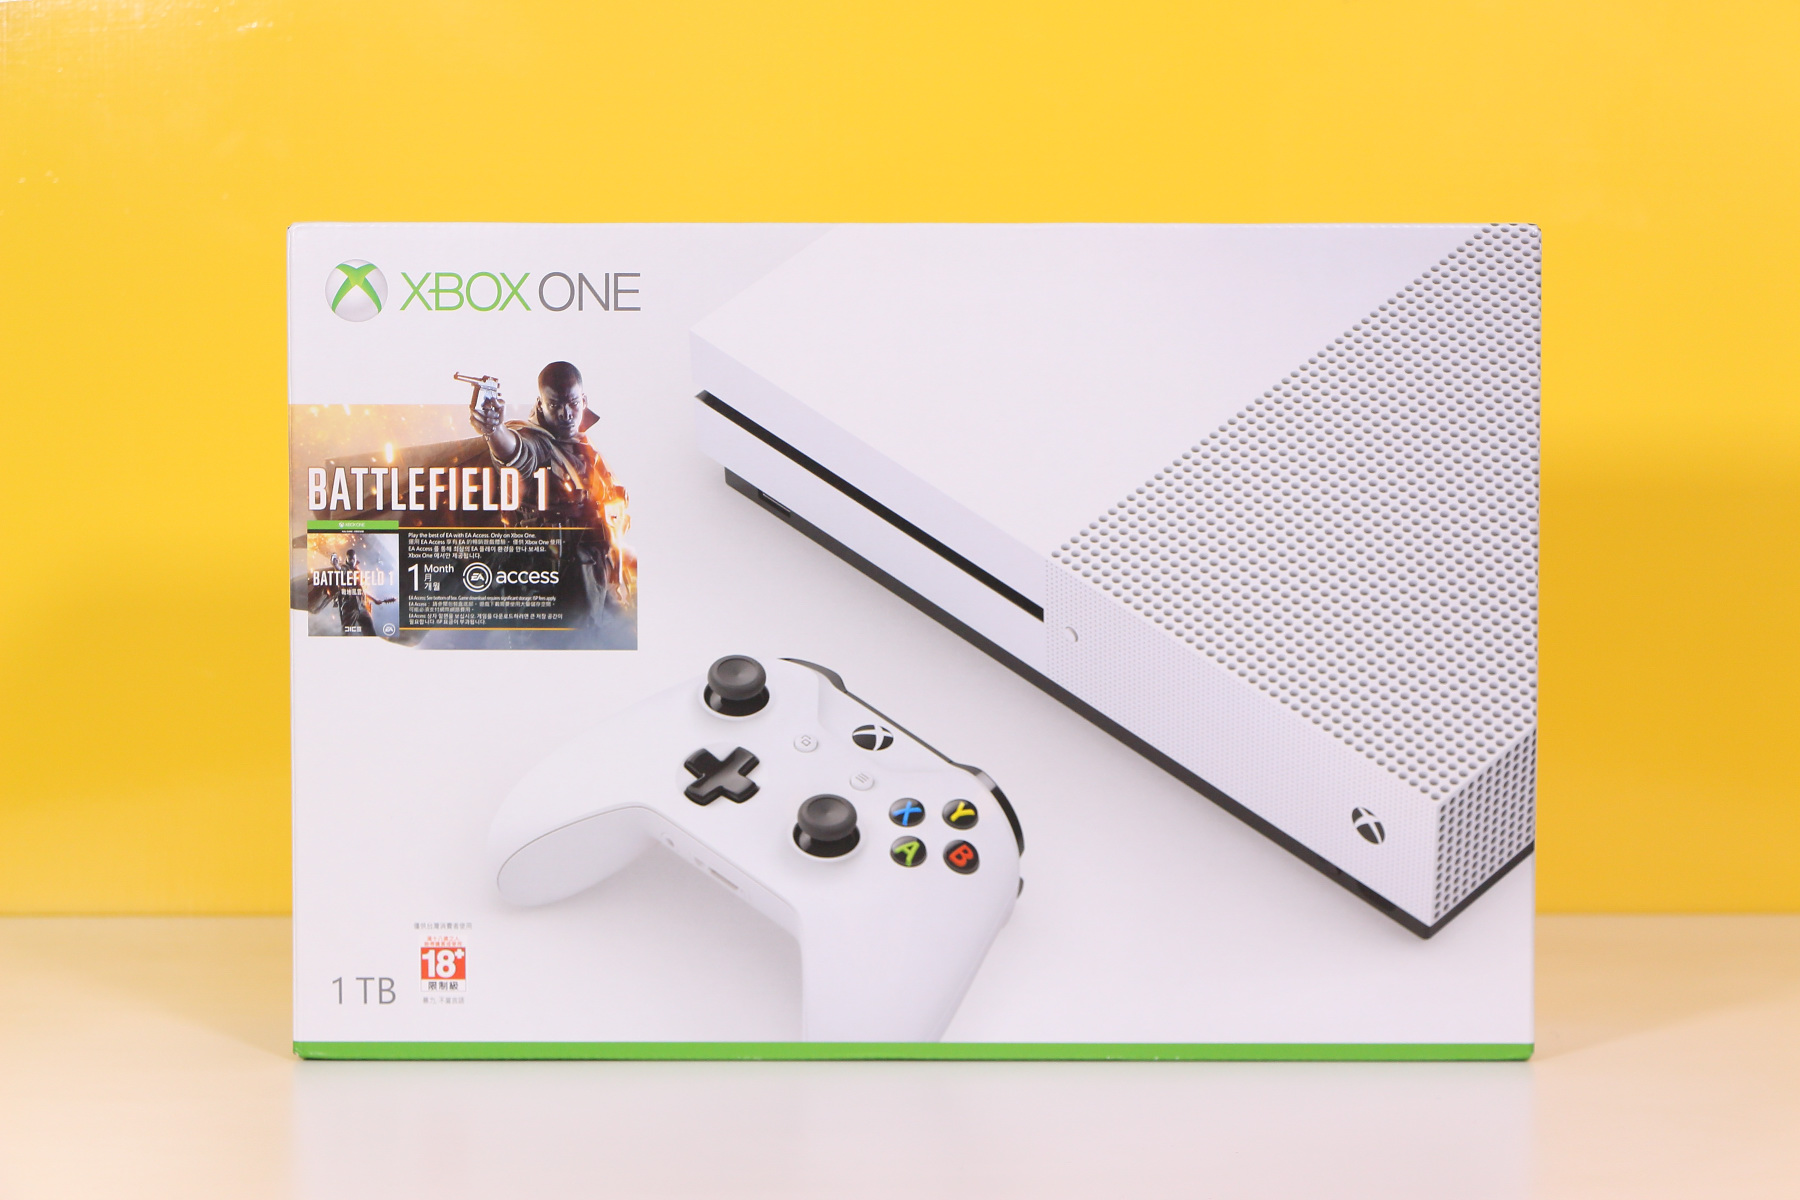 開箱】Xbox One S 1TB《戰地風雲1》同捆組開箱報導造型更簡潔洗練的